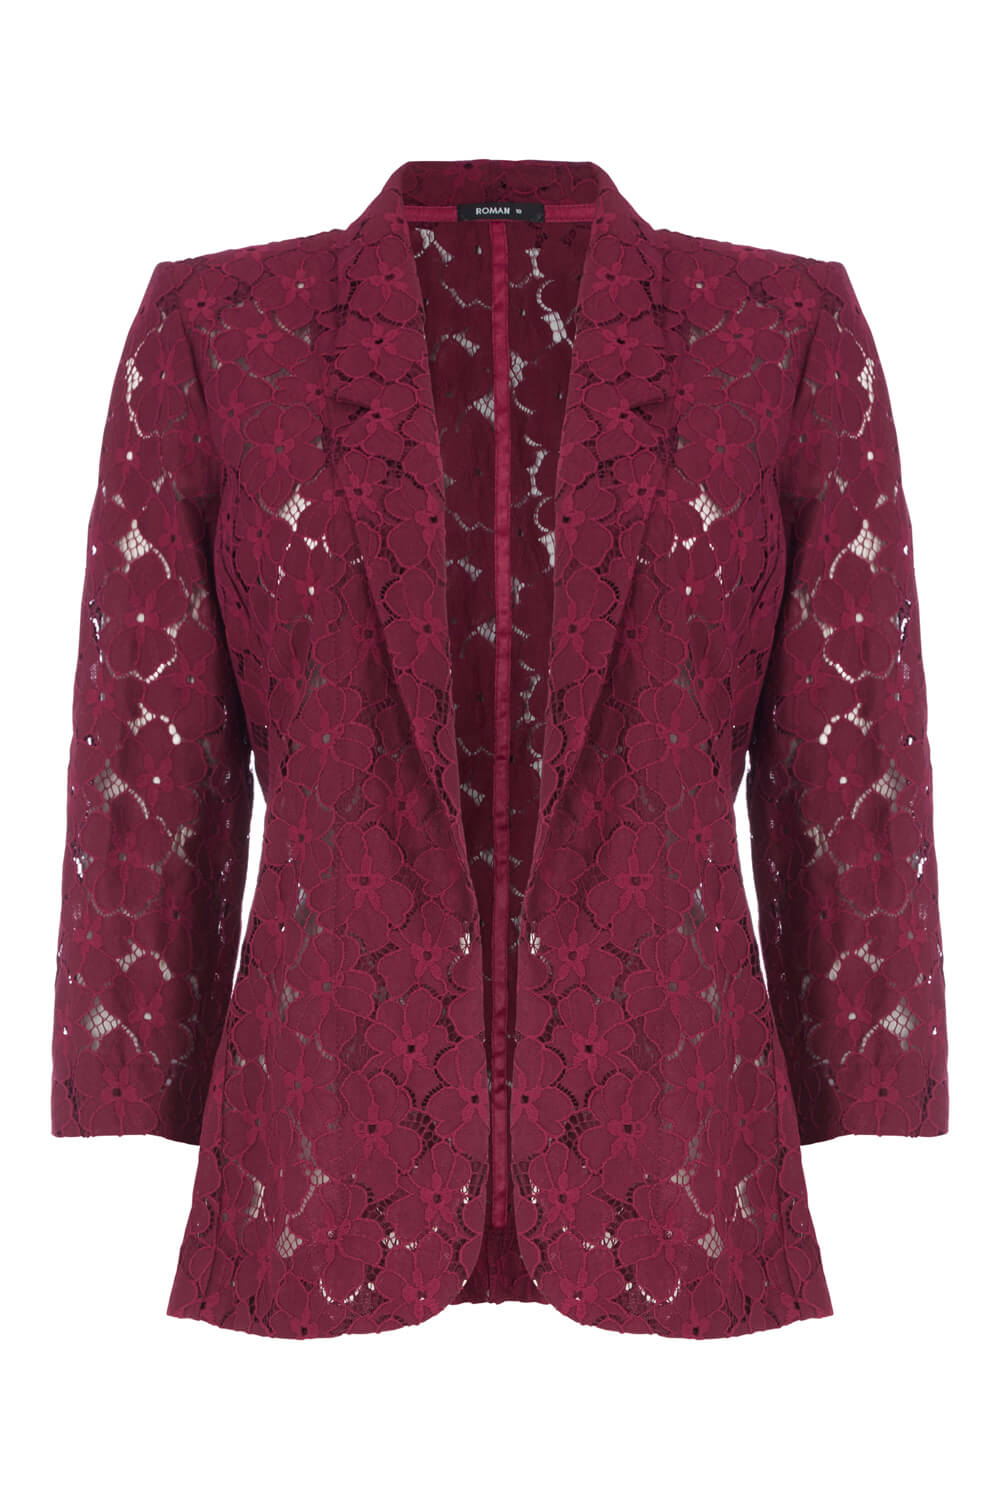 Burgundy Lace 3/4 Length Sleeve Jacket, Image 4 of 4